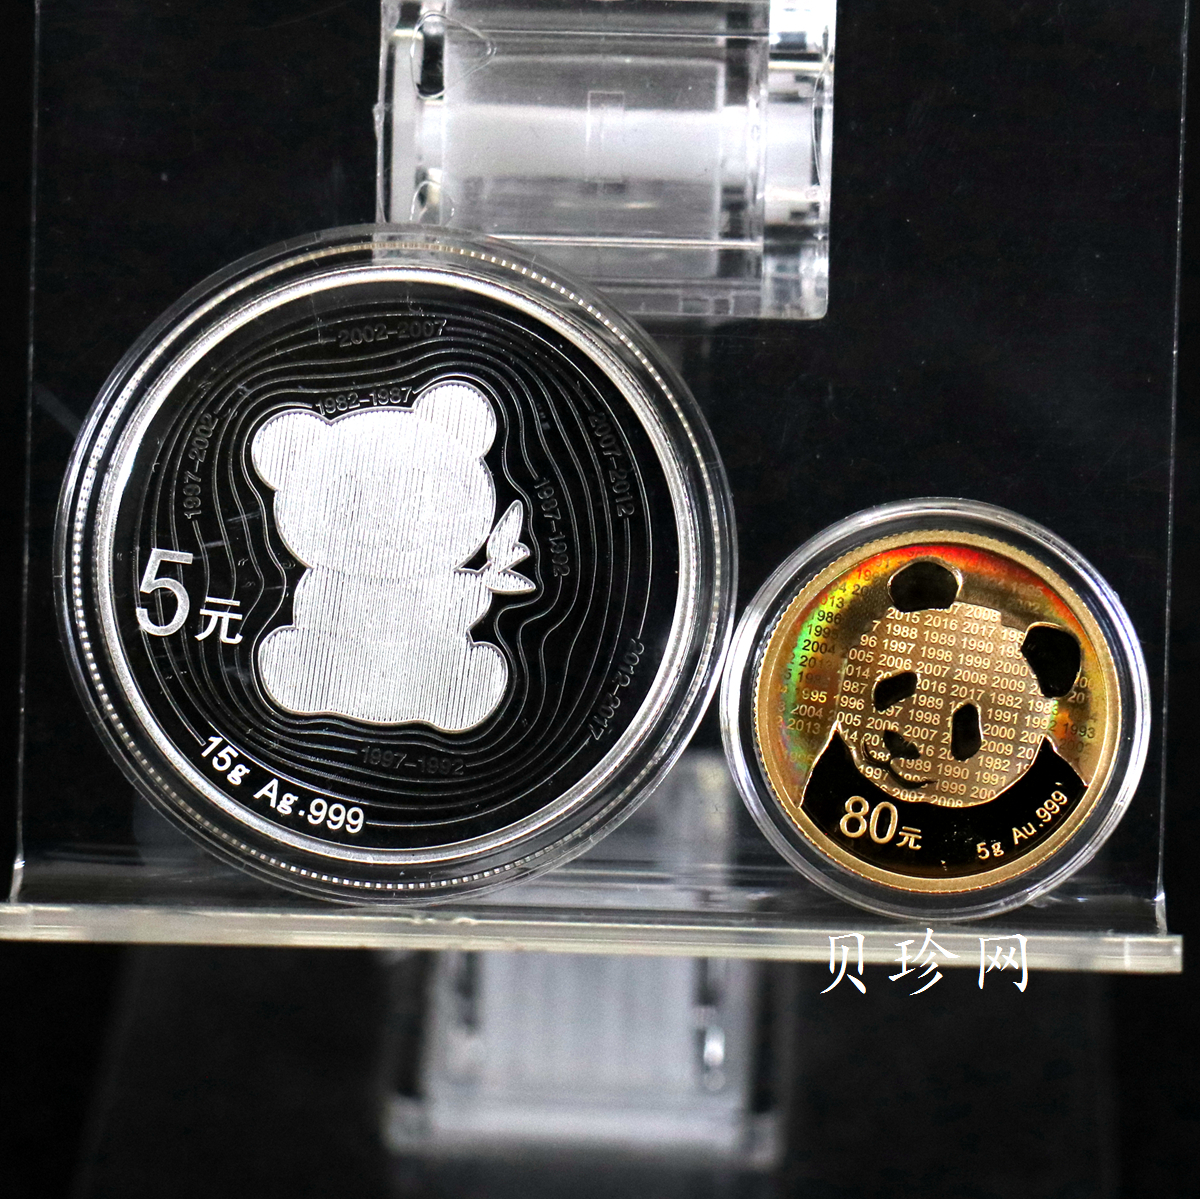 【179170】2017年中国熊猫金币发行35周年精制金银币二枚一套